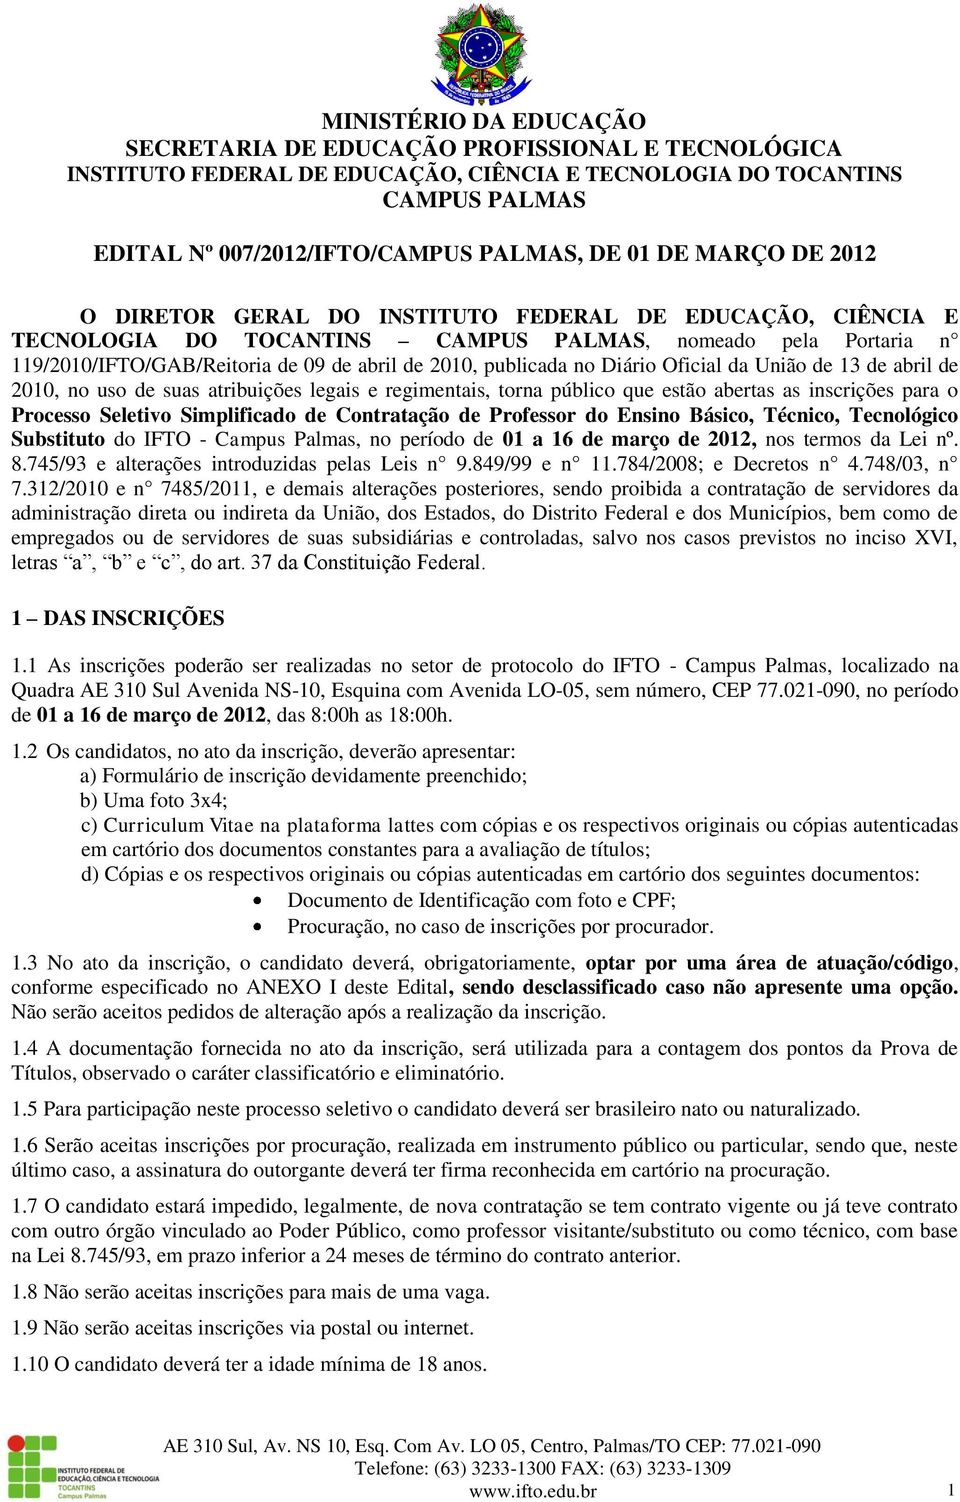 Simplificado de Contratação de Professor do Ensino Básico, Técnico, Tecnológico Substituto do IFTO - Campus Palmas, no período de 01 a 16 de março de 2012, nos termos da Lei nº. 8.